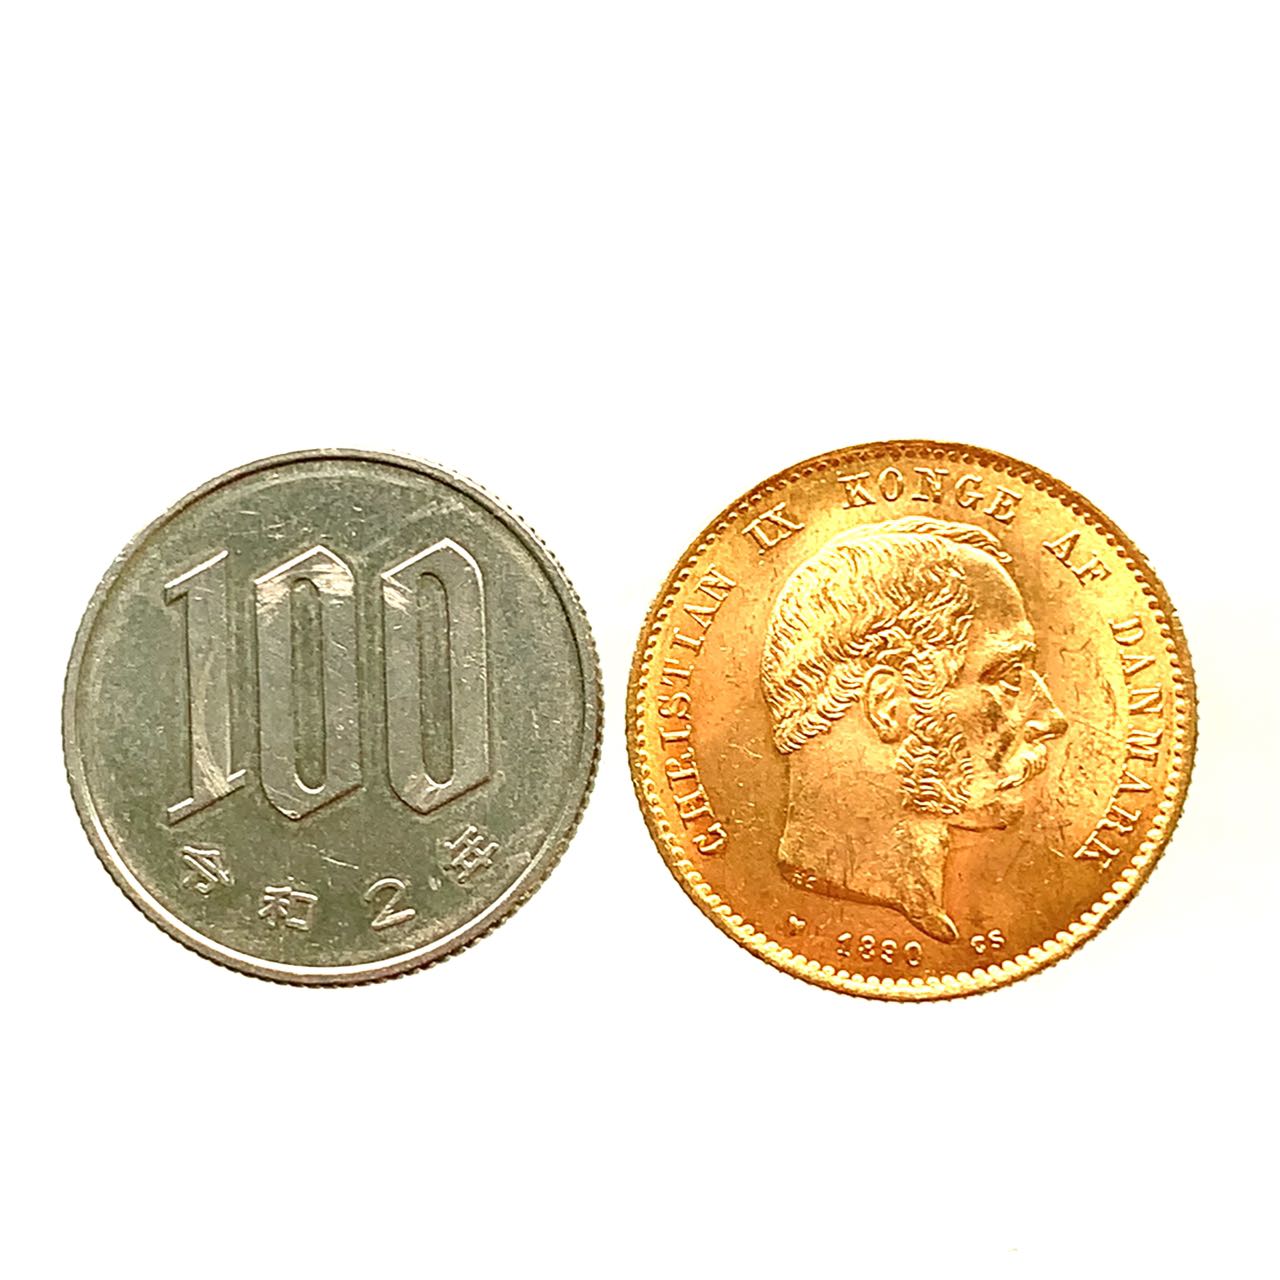 デンマーク クリスチャン9世 20クローネ金貨 1890年 21.6金 8.9g コイン イエローゴールド コレクション Gold 美品 3